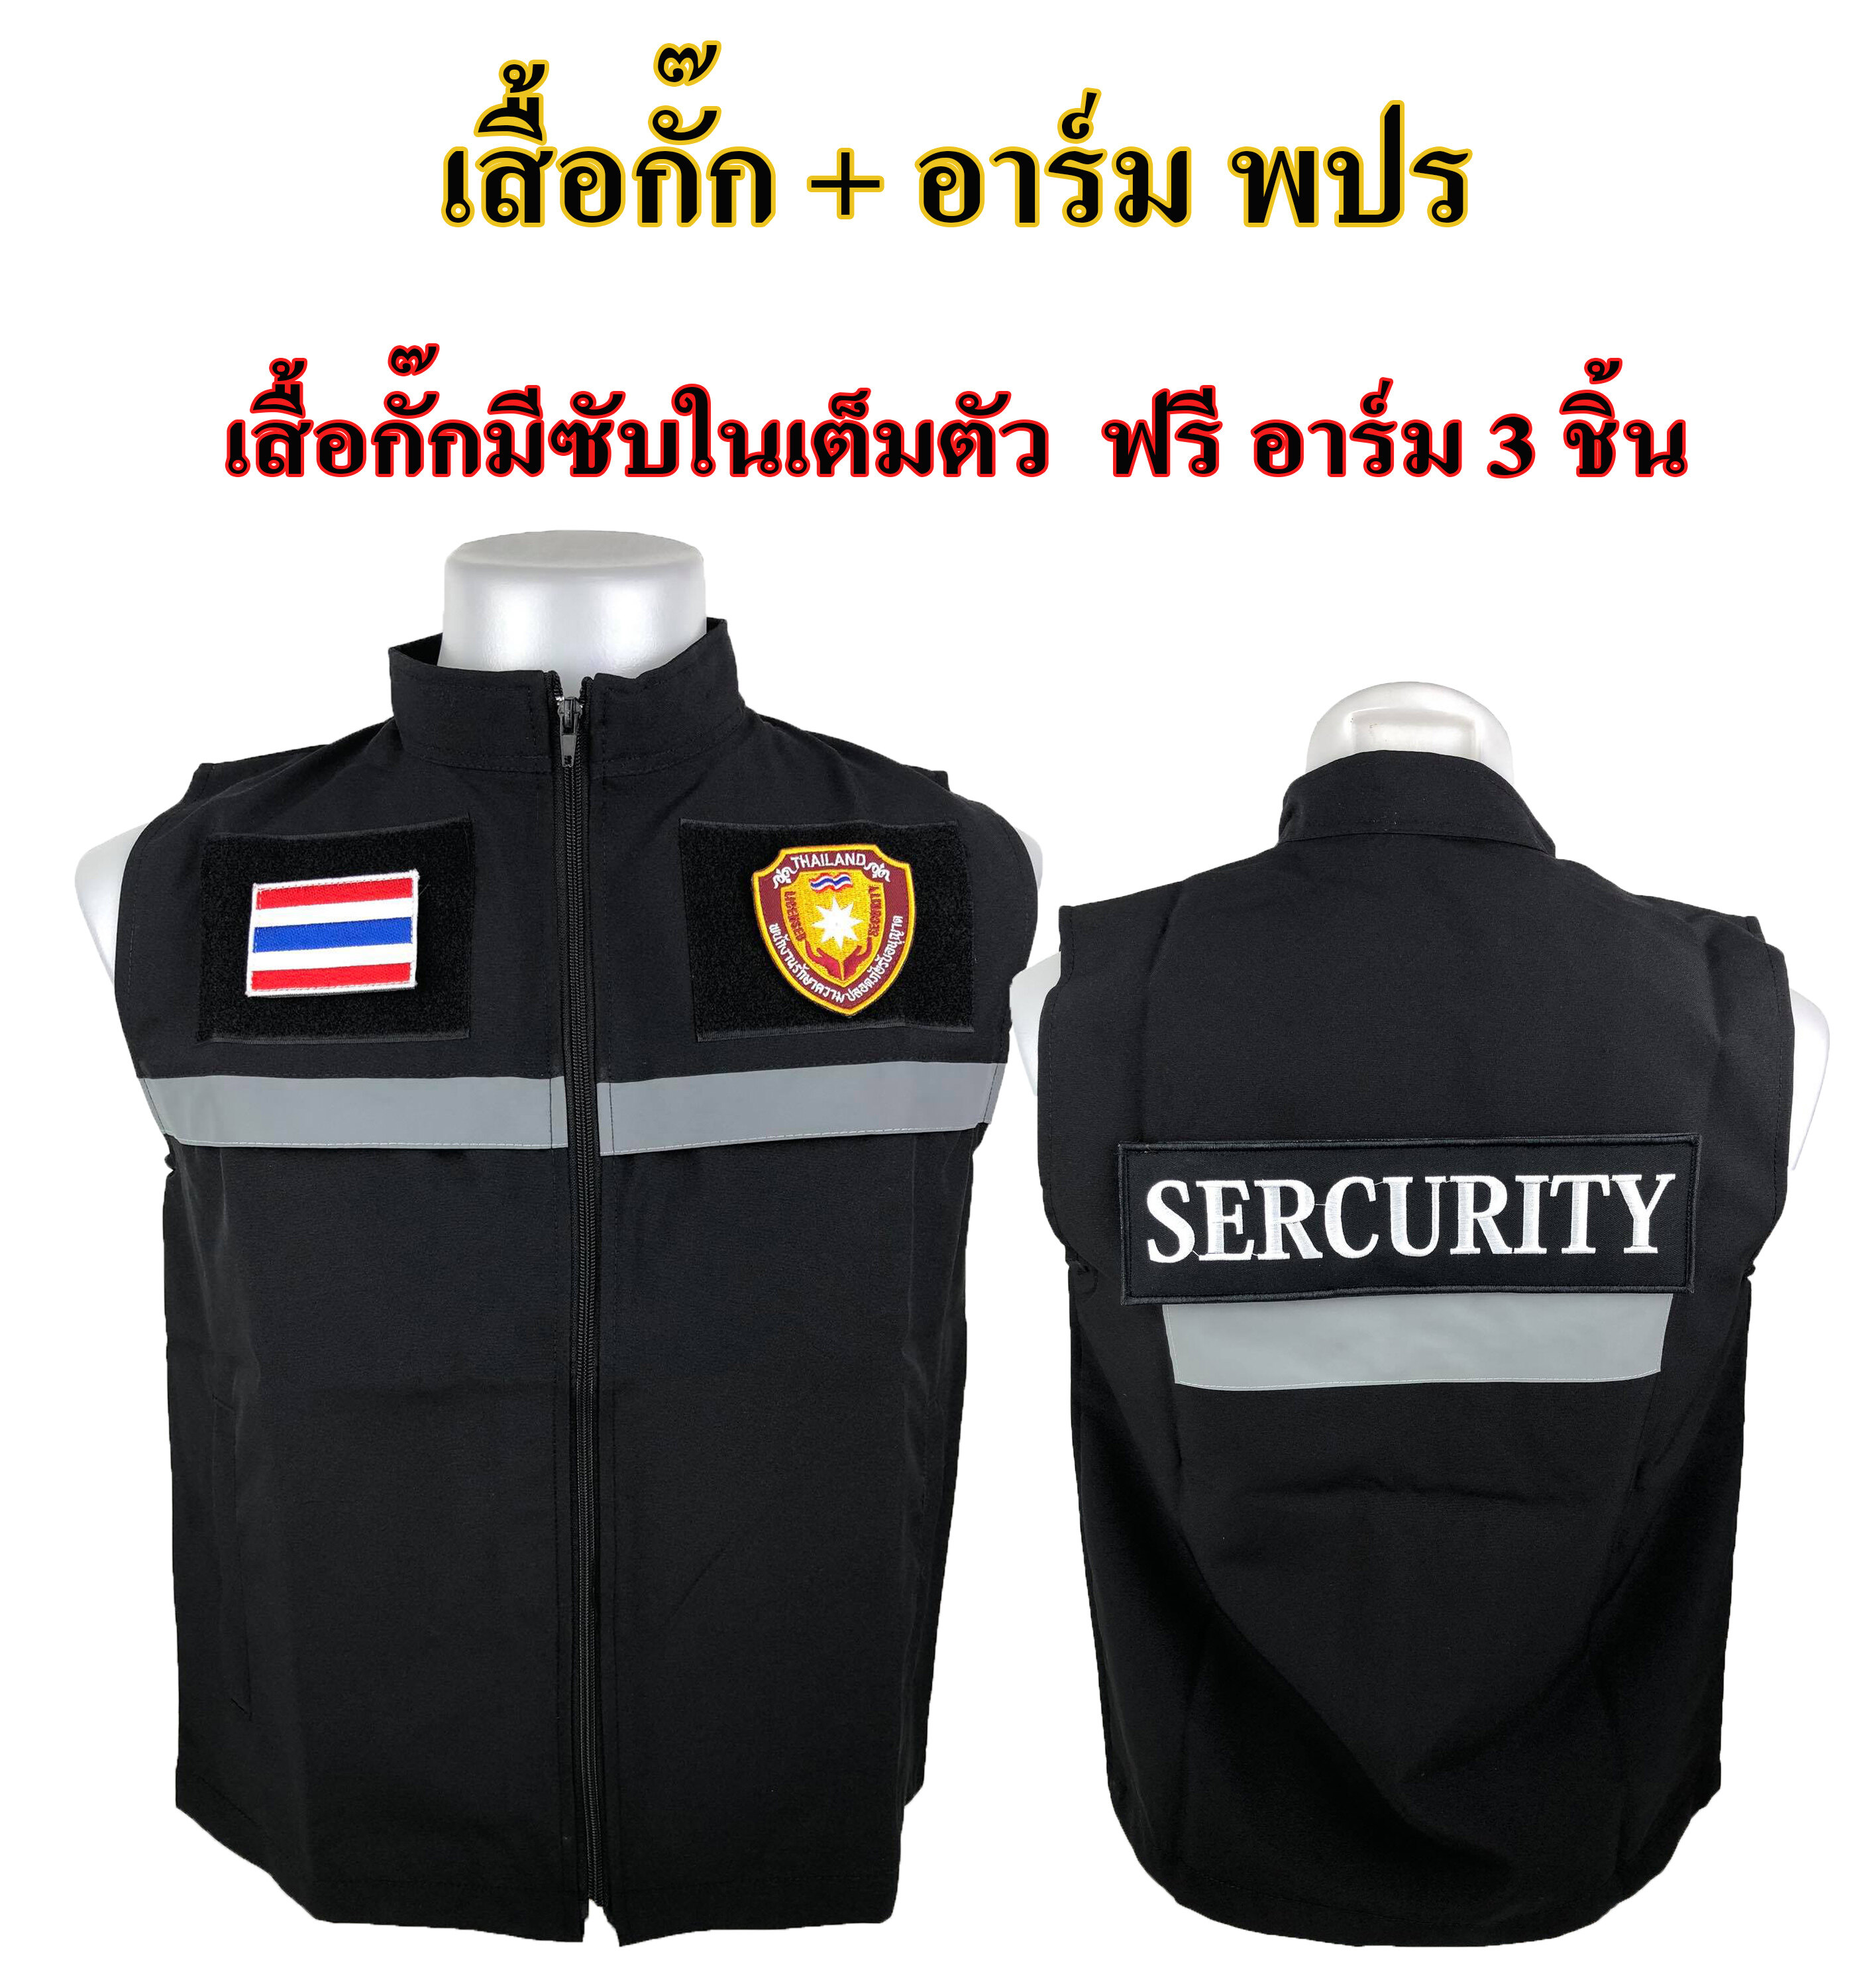 เสื้อกั๊ก พนักงานรักษาความปลอดภัย พปร. รปภ. (SECURITY) แบบมีแถปสะท้อนแสง ซับในเต็มตัว มีไซส์ S - XL ผ้ากันน้ำไม่ร้อนใส่สบาย